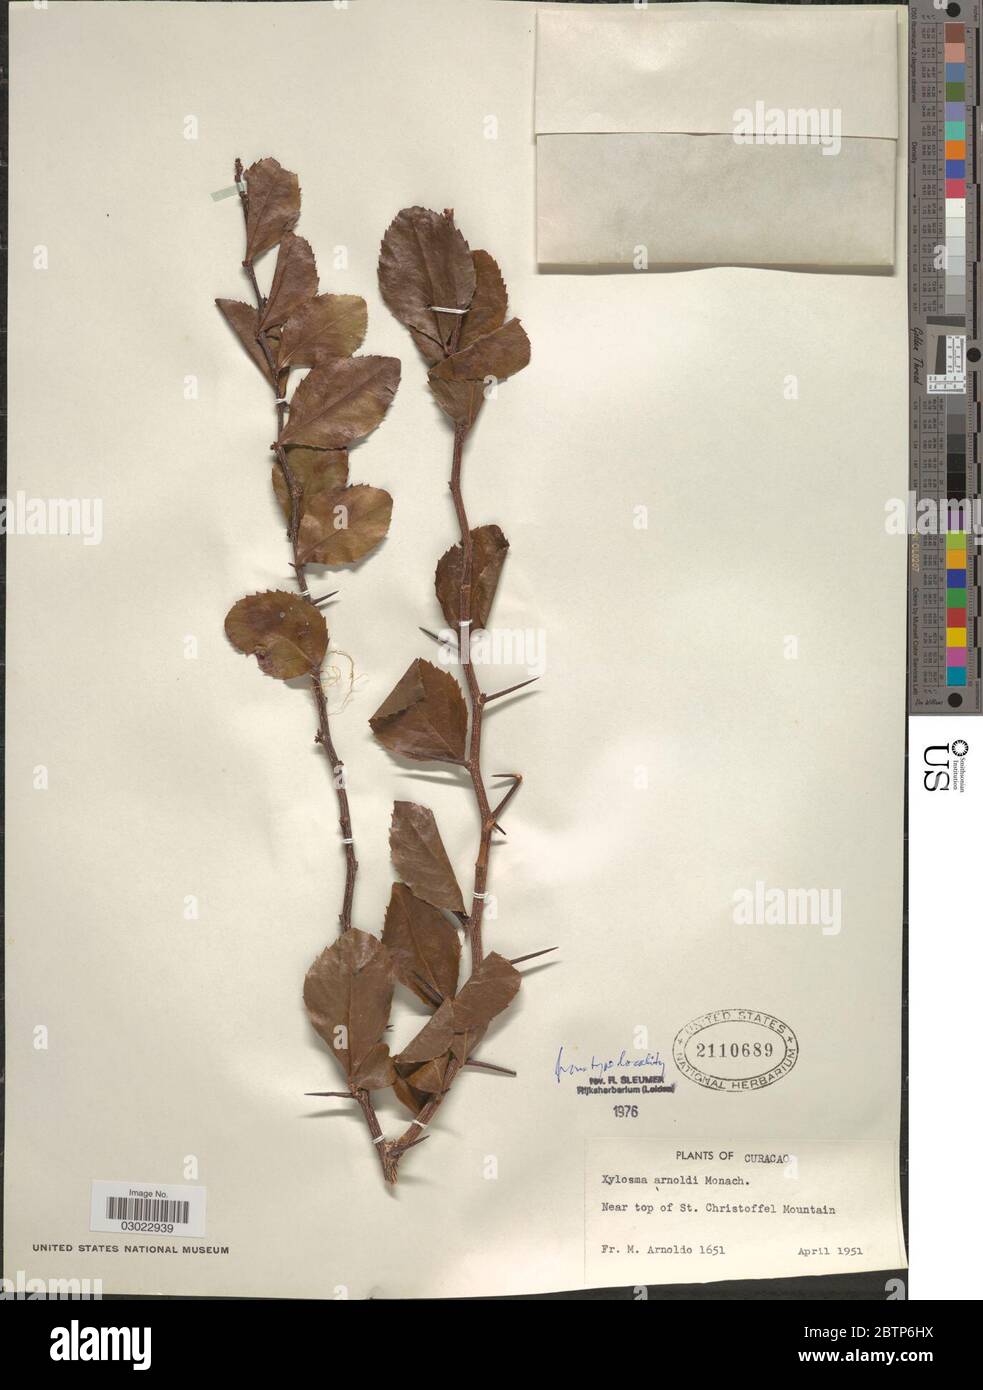 Xylosma arnoldii Monach. Stock Photo